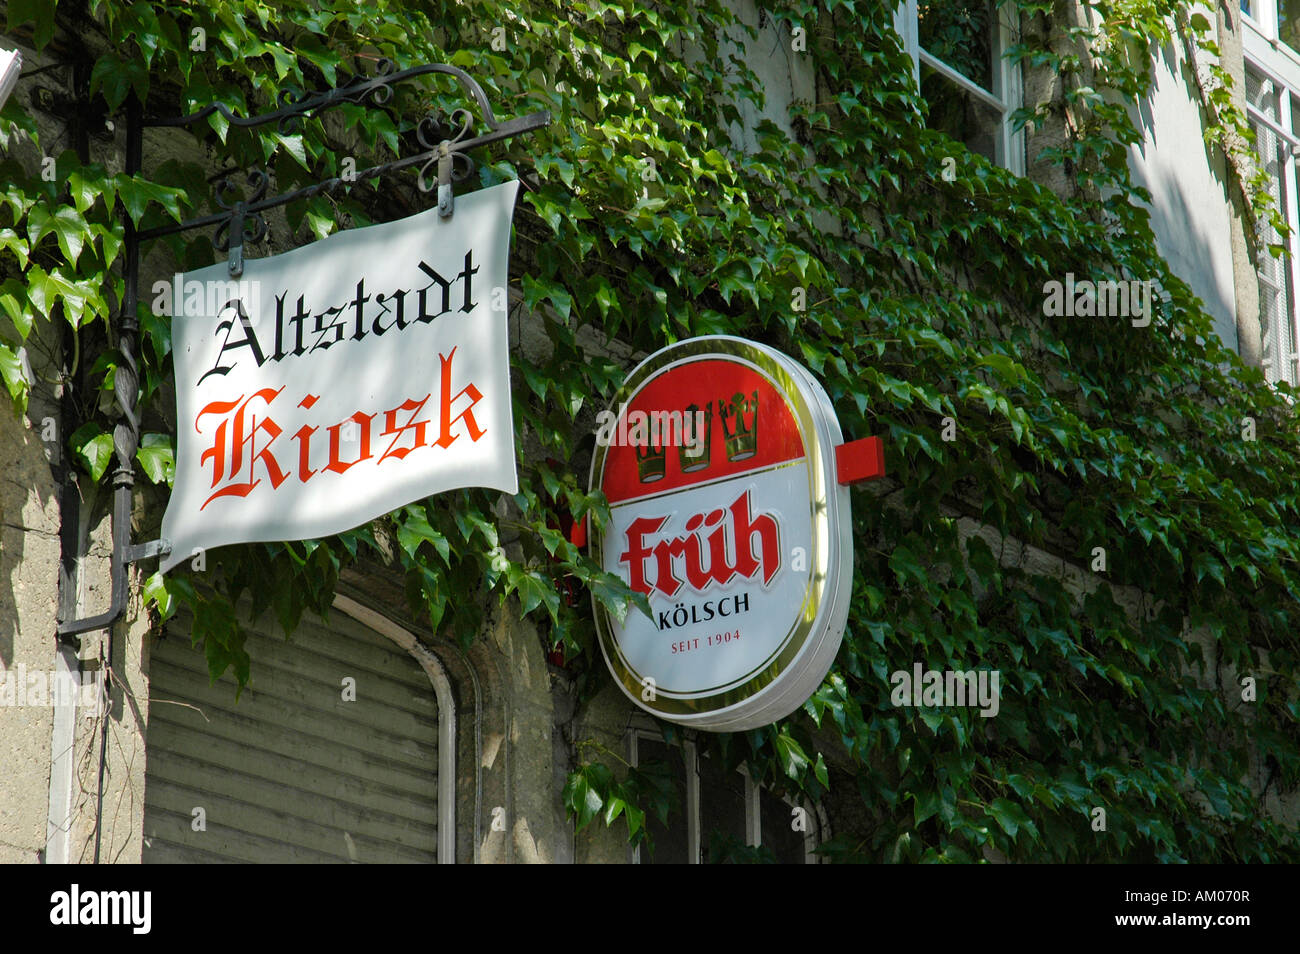 Old city kiosk taverne, Frueh Koelsch beer, Cologne, North Rhine-Westphalia, Germany Stock Photo